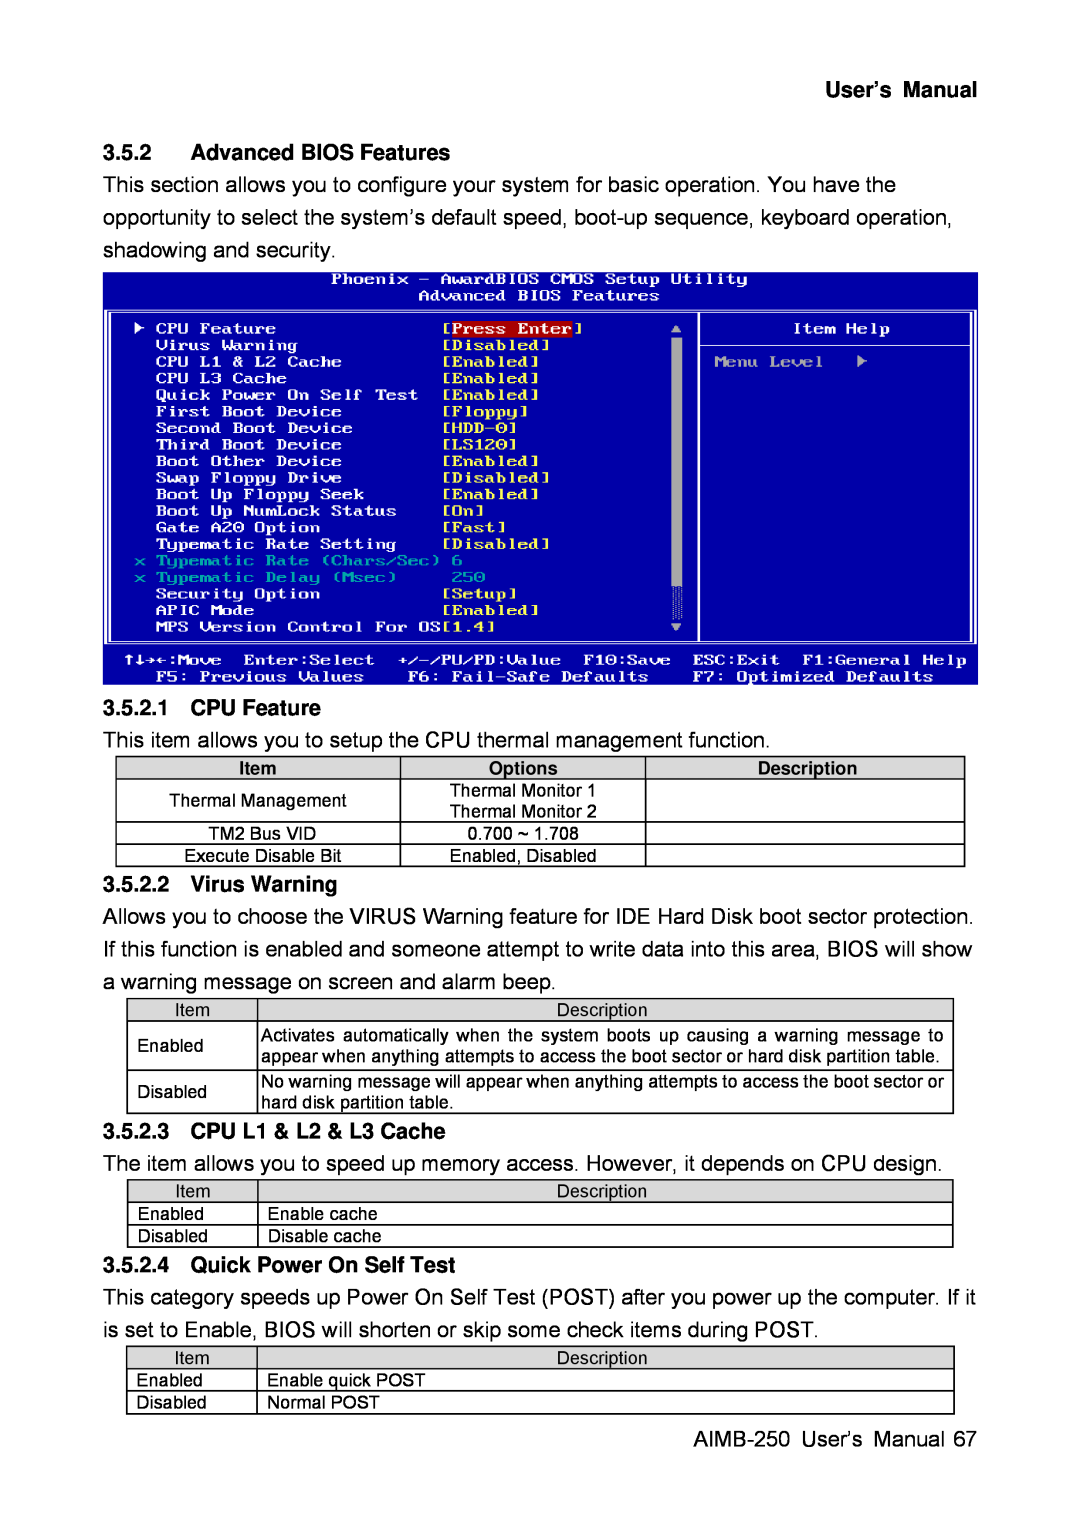 Advantech AIMB-250 User’s Manual 3.5.2 Advanced BIOS Features, CPU Feature, Virus Warning, CPU L1 & L2 & L3 Cache 